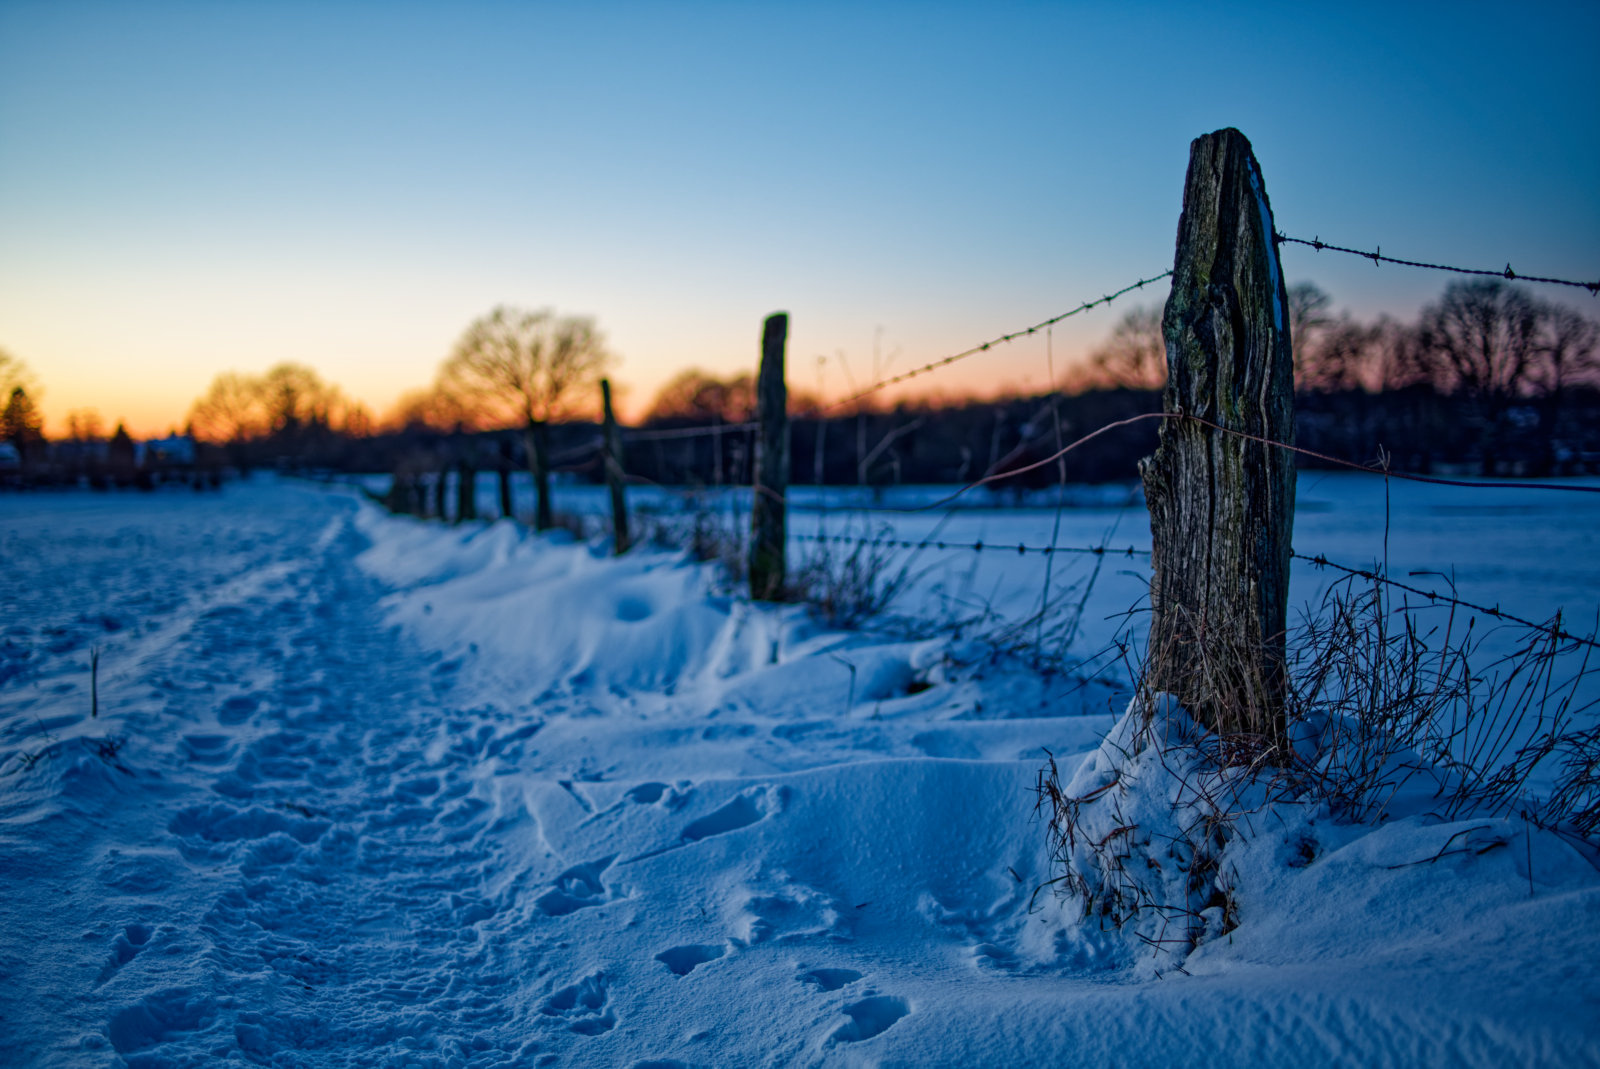 Blick längs eines DrahtZauns mit roh gehauenen Pfosten, an dem entlang sich Schnee angehäuft hat. Am Horizont rötliches Licht der untergehenden Sonne